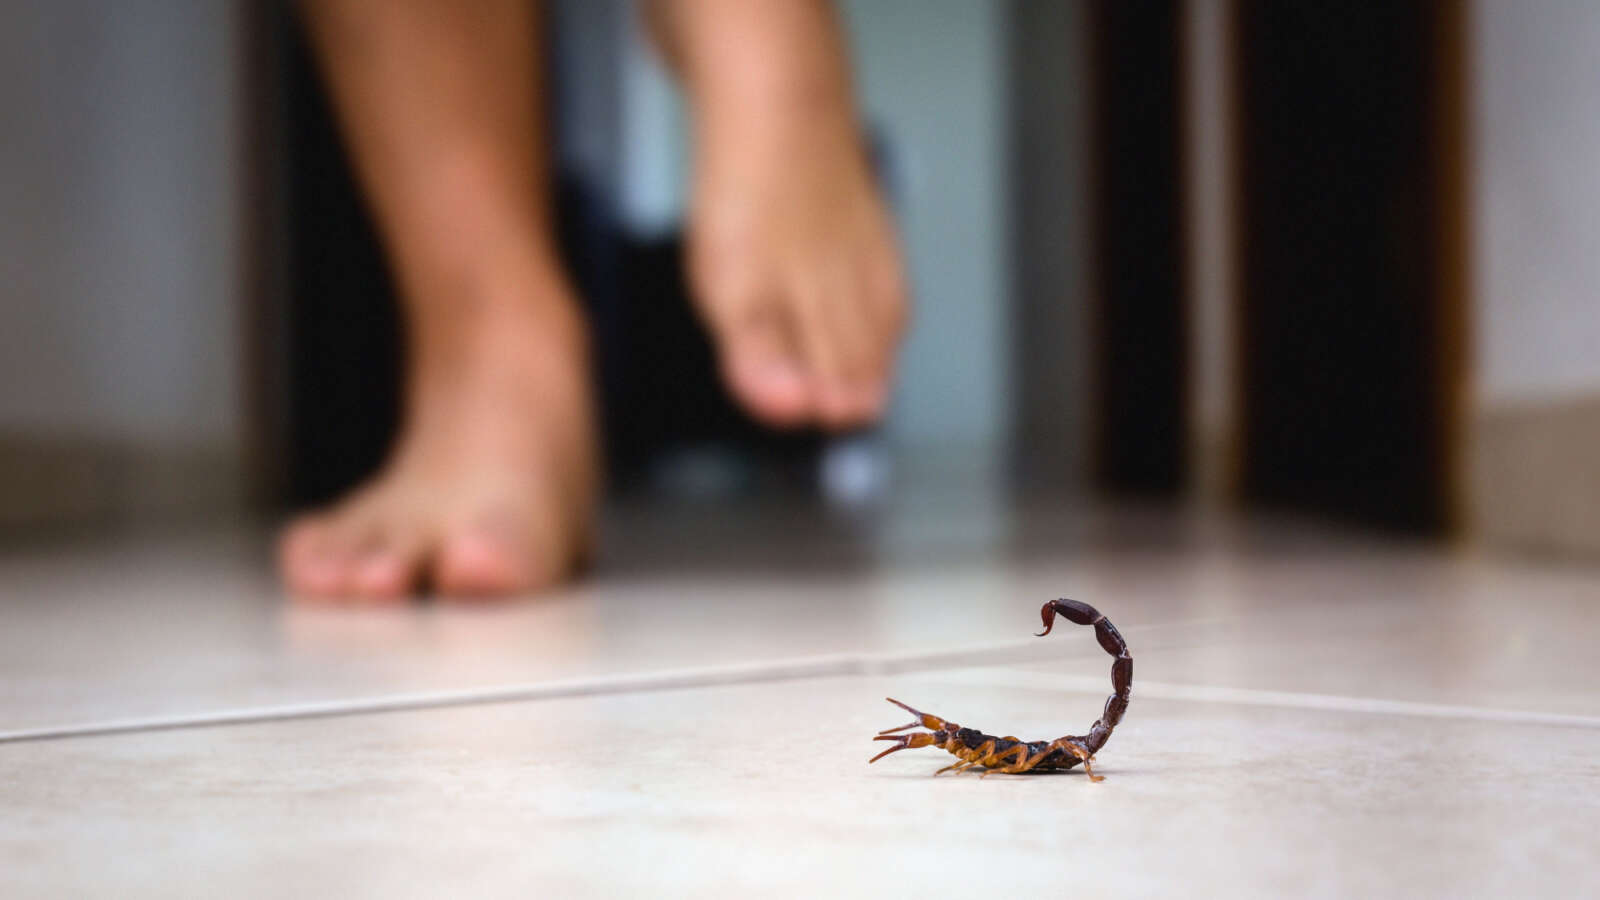 Scorpion Home Defense